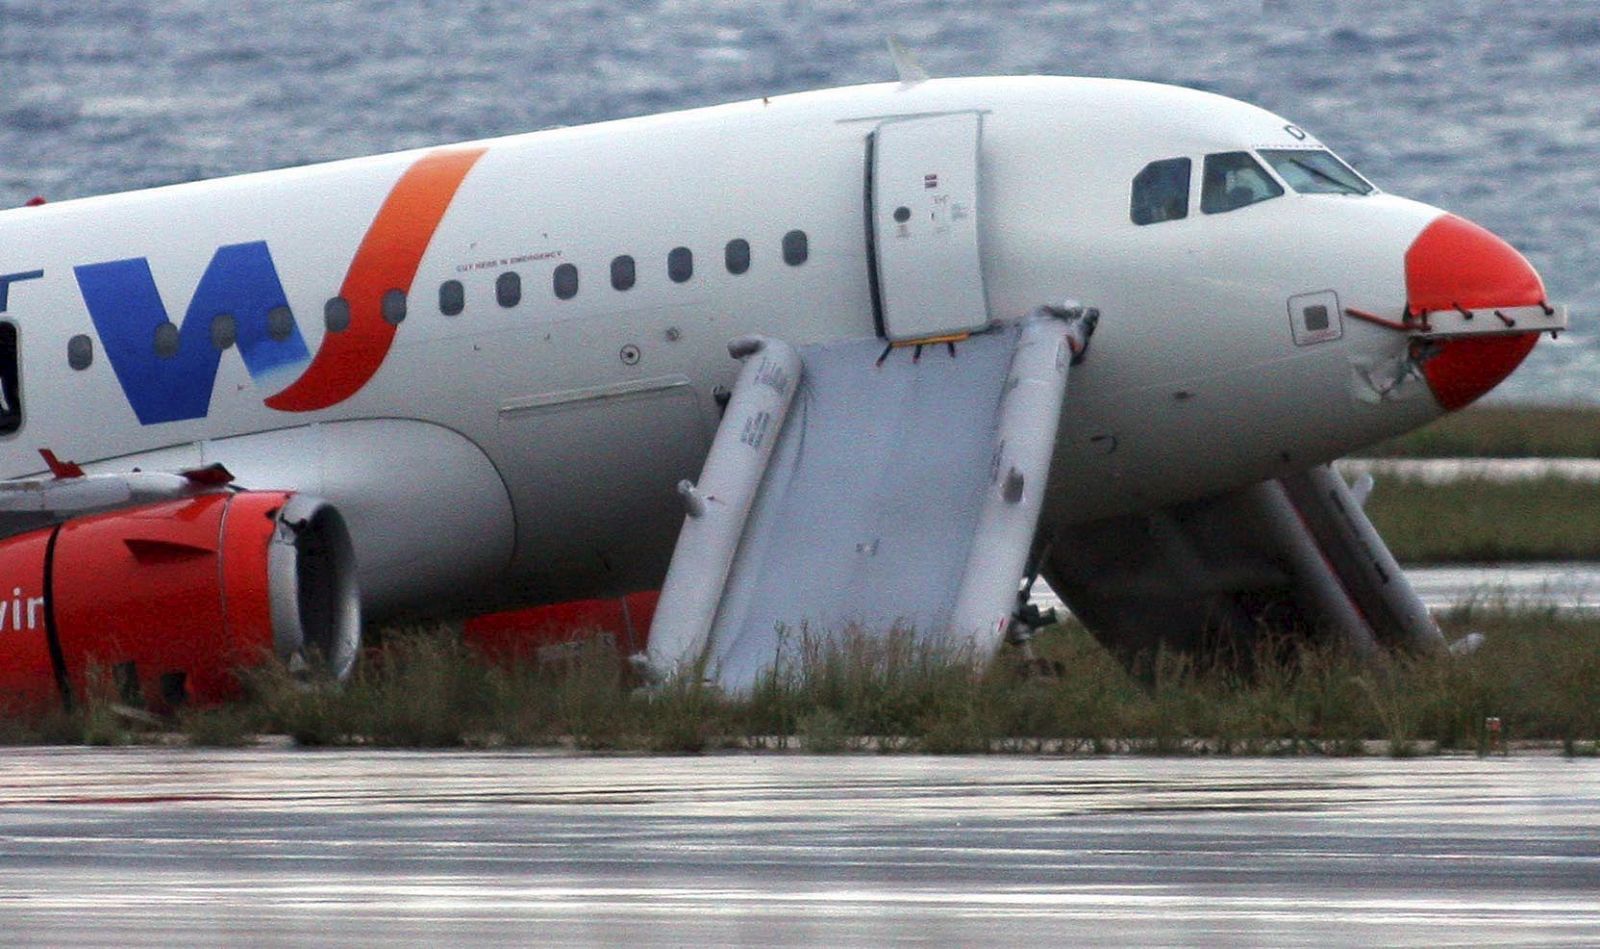 Dos rampas deslizantes de emergencia salen de la parte delantera del Airbus 300 accidentado